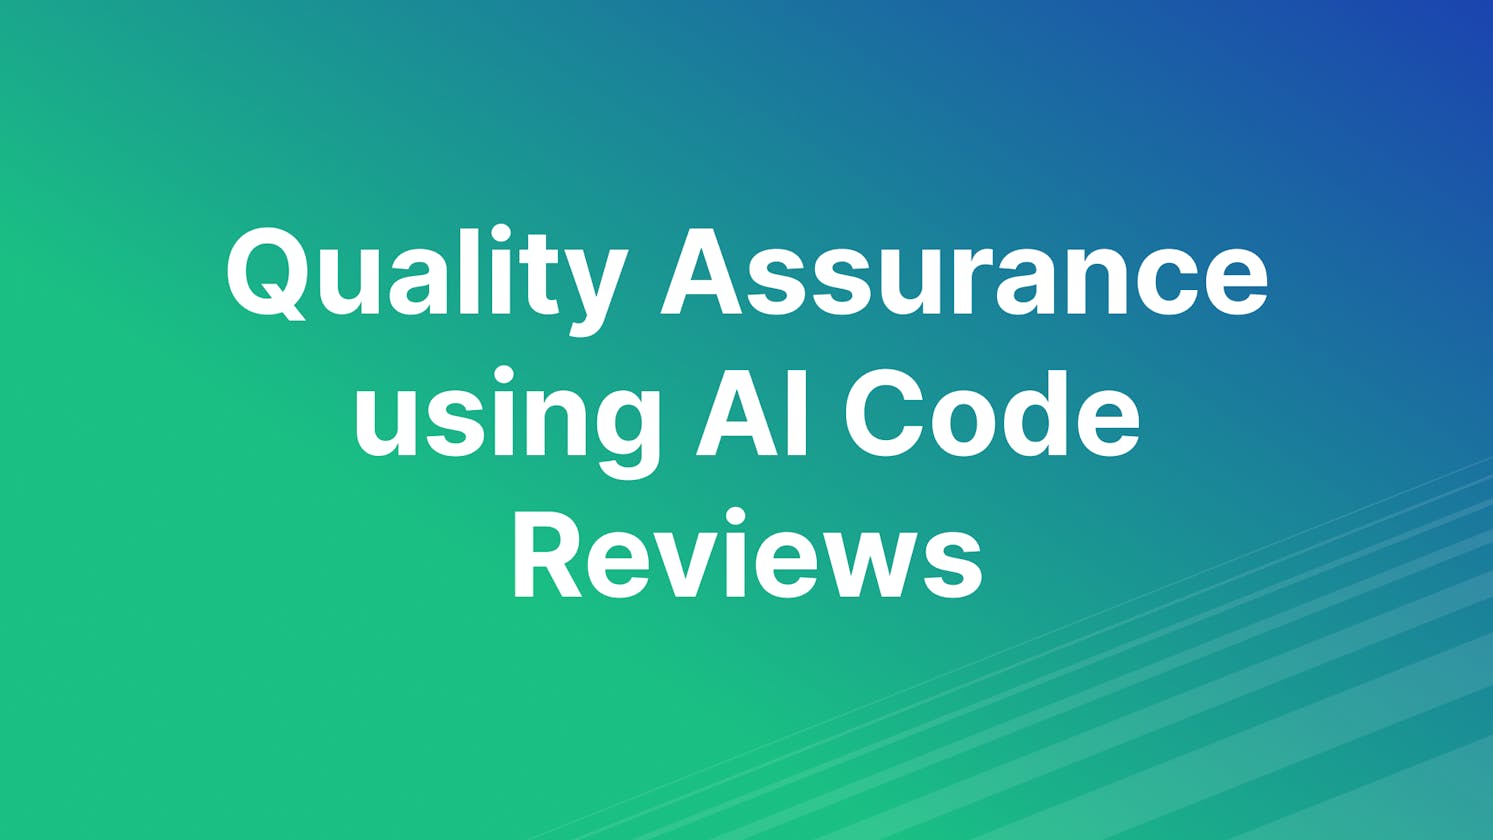 Quality Assurance using AI Code Reviews